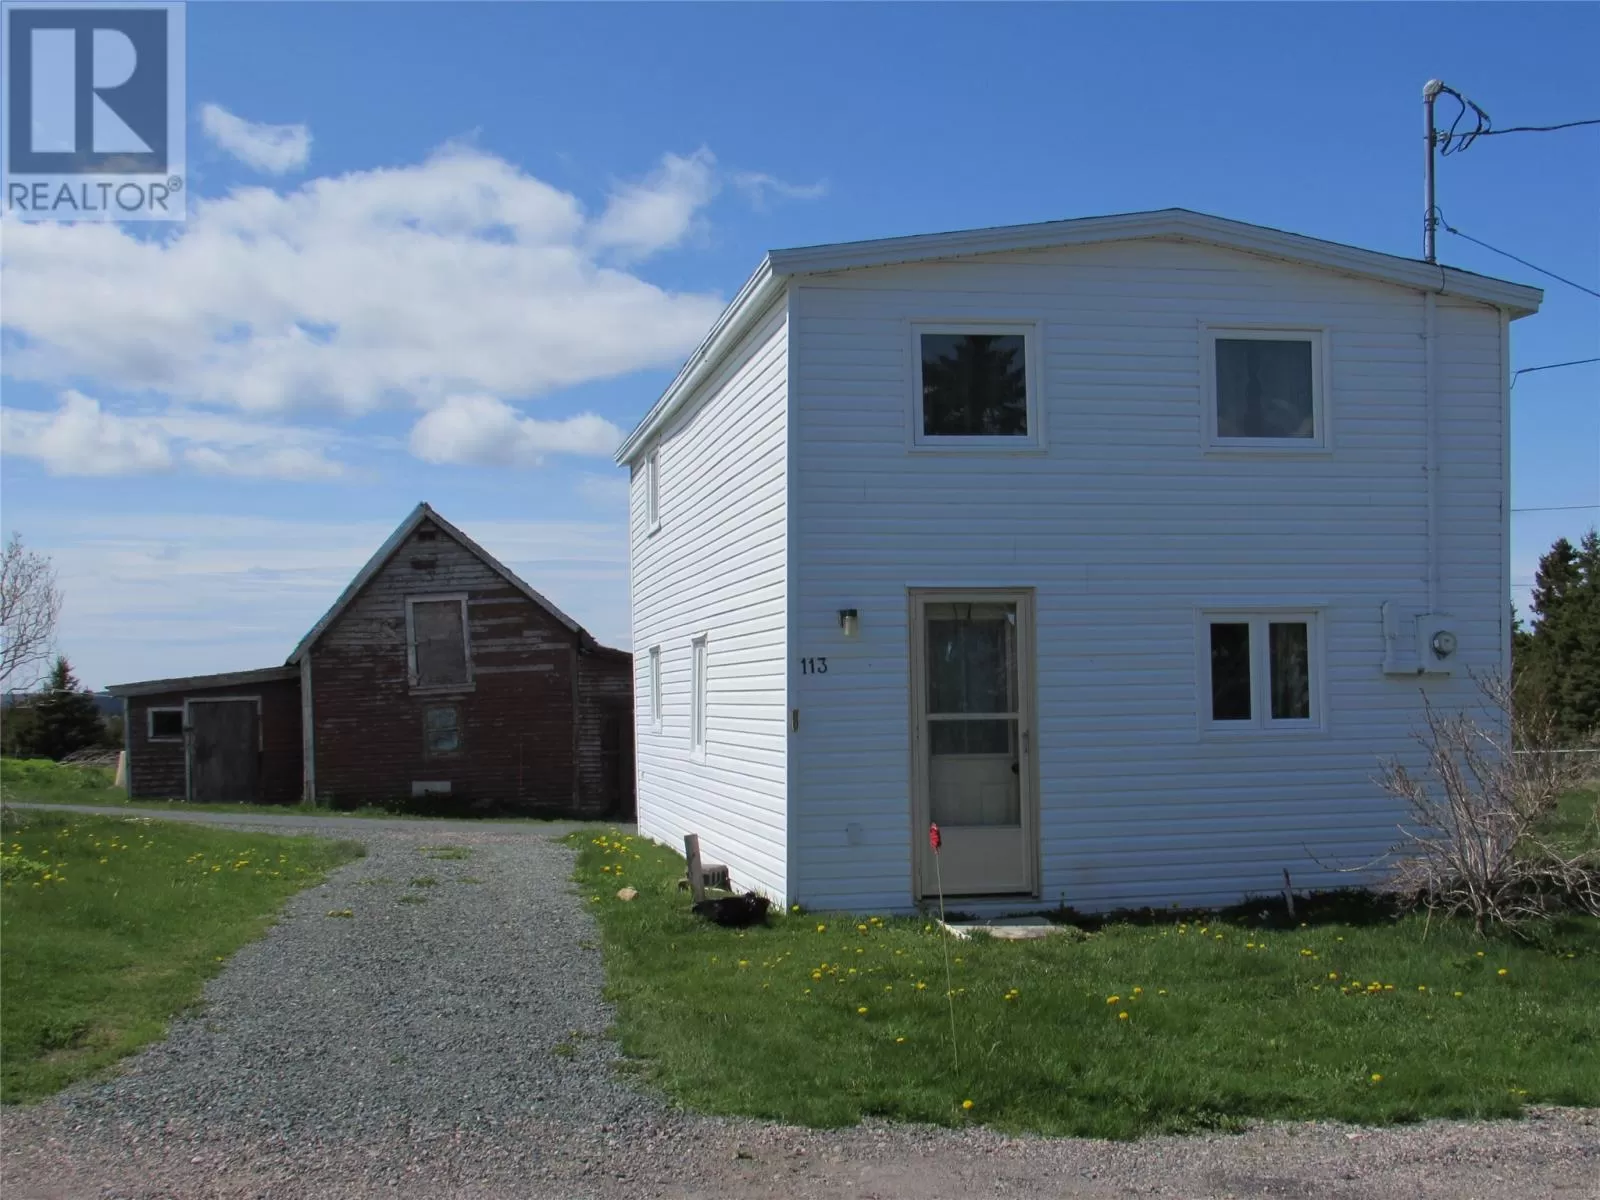 House for rent: 113 Point Road, Chapel's Cove, Newfoundland & Labrador A0A 1V0